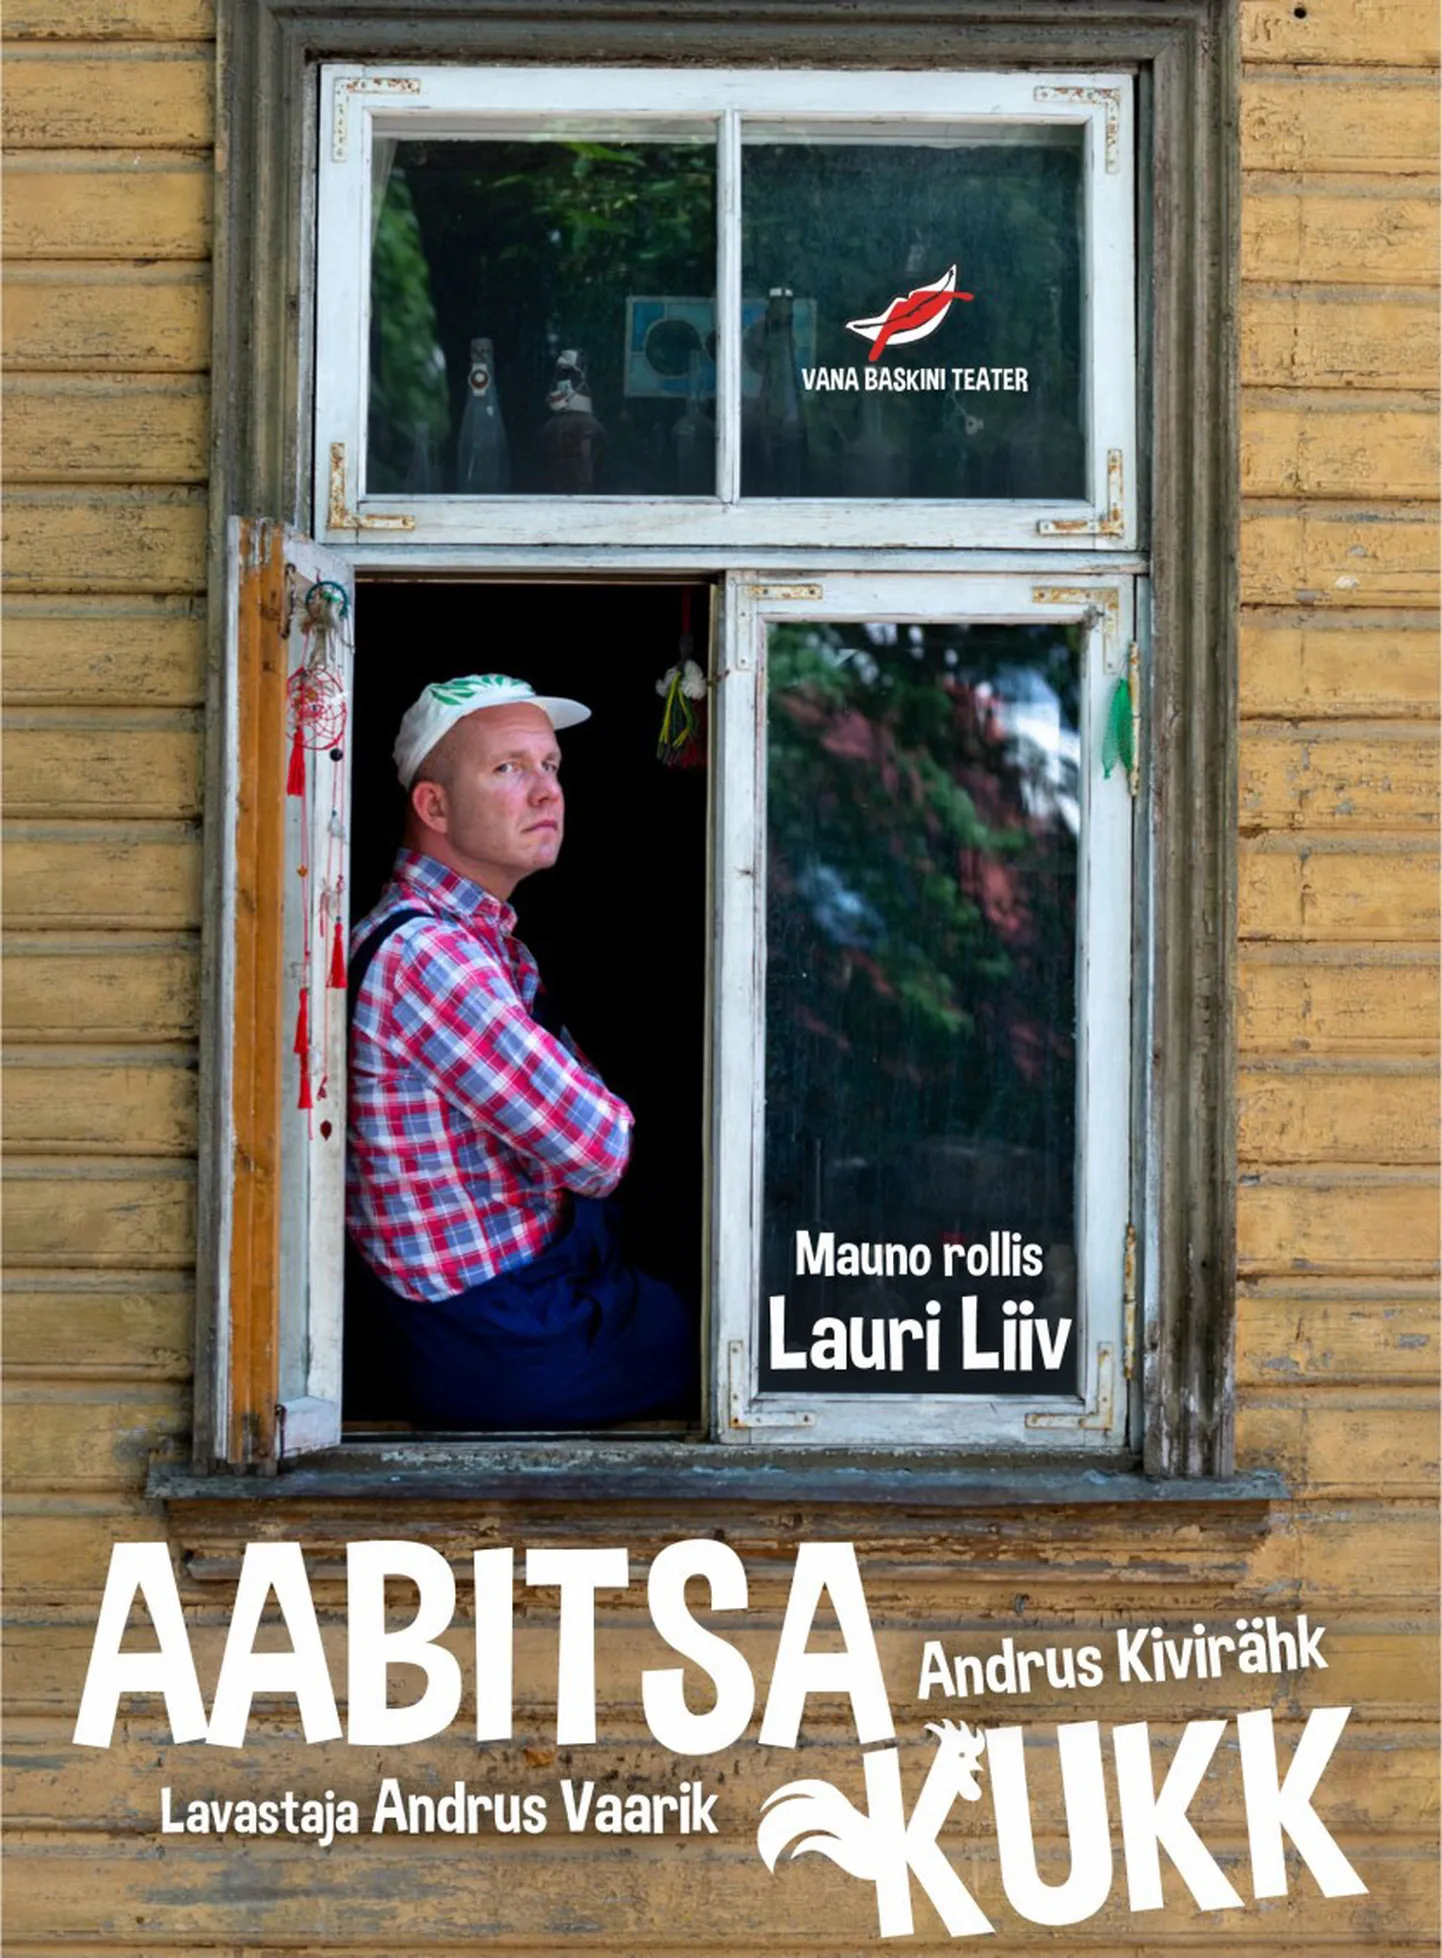 Ugala teatri väikeses saalis etendub 15. mail kell 19 Vana Baskini teatri «Aabitsa kukk».